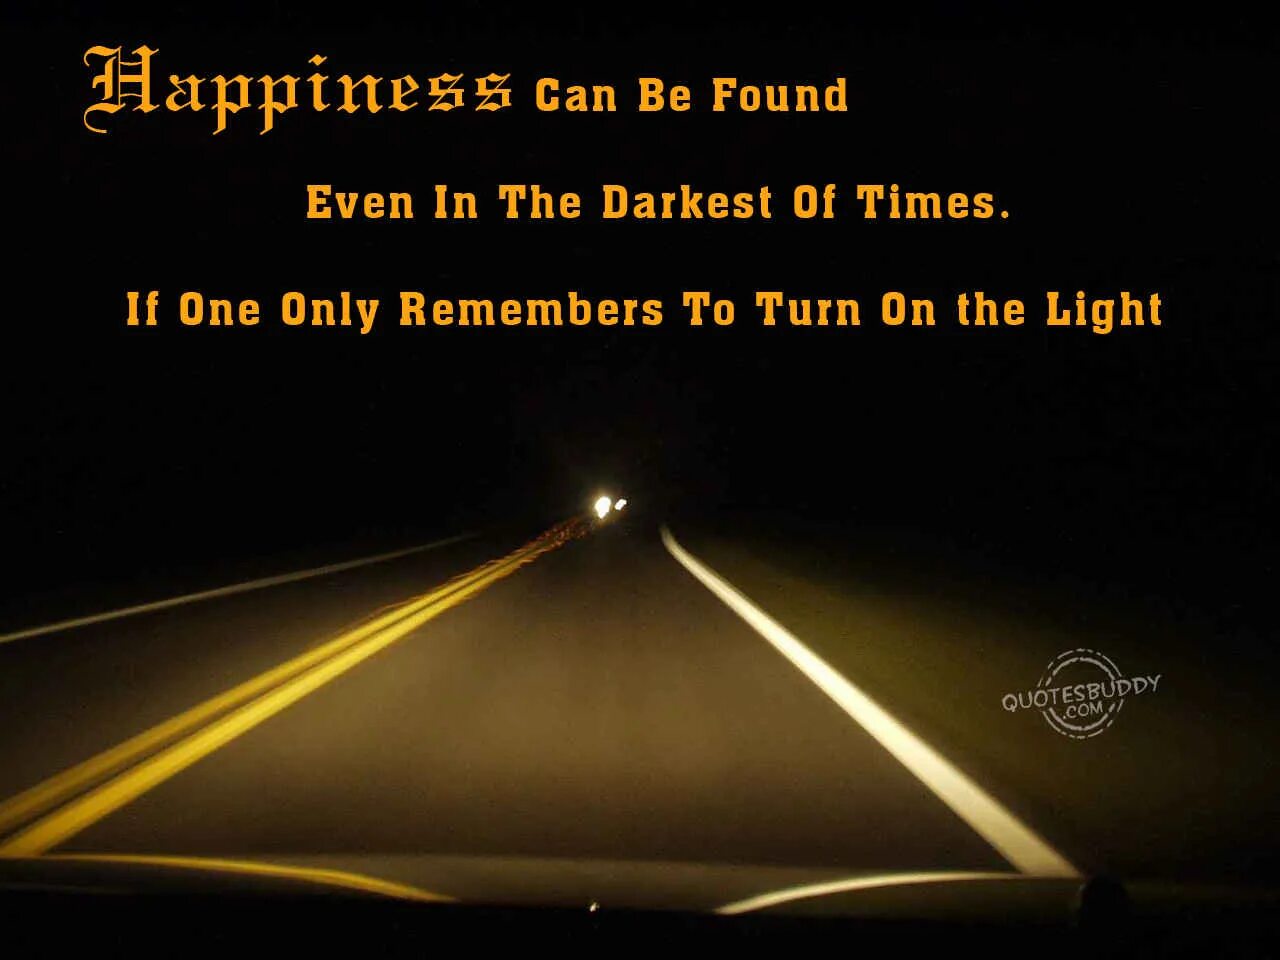 Можно включить свет. Счастье можно найти даже в самые темные времена. Даже в самые те ные времена. Счастье можно найти даже в темные времена если обращаться к свету. Даже в самые темные времена.